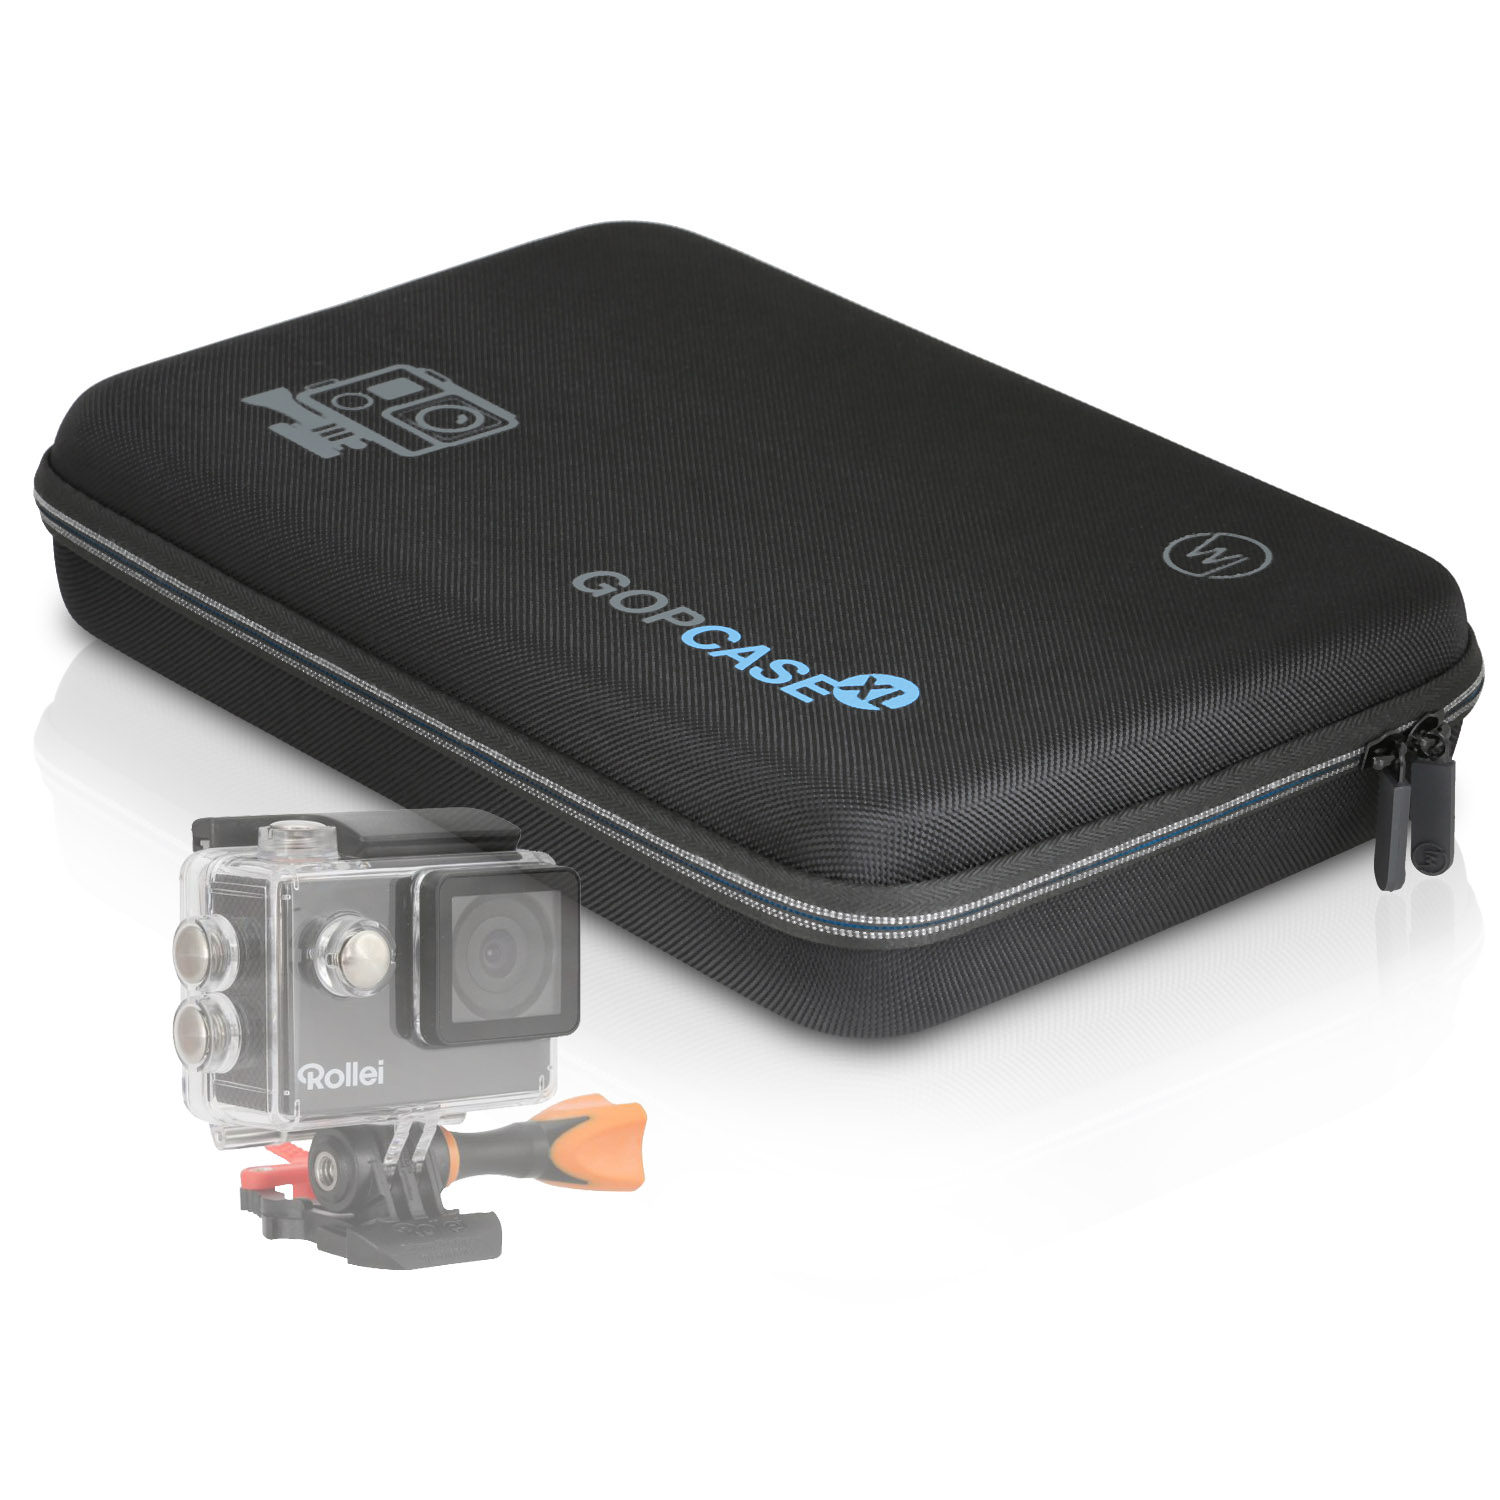 WICKED CHILI GOP / / Rollei mit Tasche 510 für schwarz 425 550 Case 530 Koffer / 560 kompatibel 540 / Schutztasche, Actioncam Kamera 